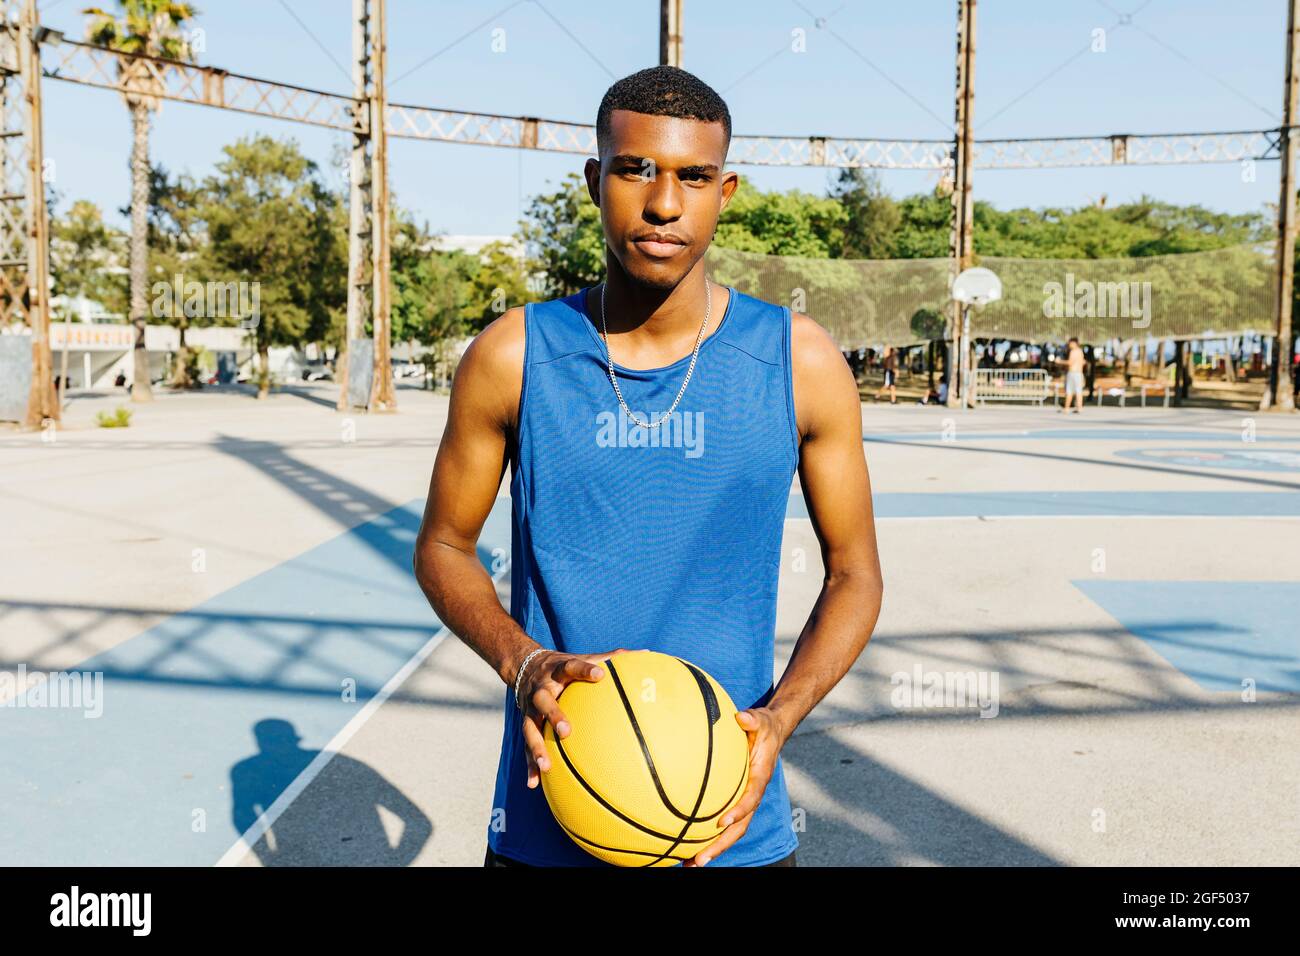 Männlicher Basketballspieler, der Basketball auf dem Sportplatz hält Stockfoto